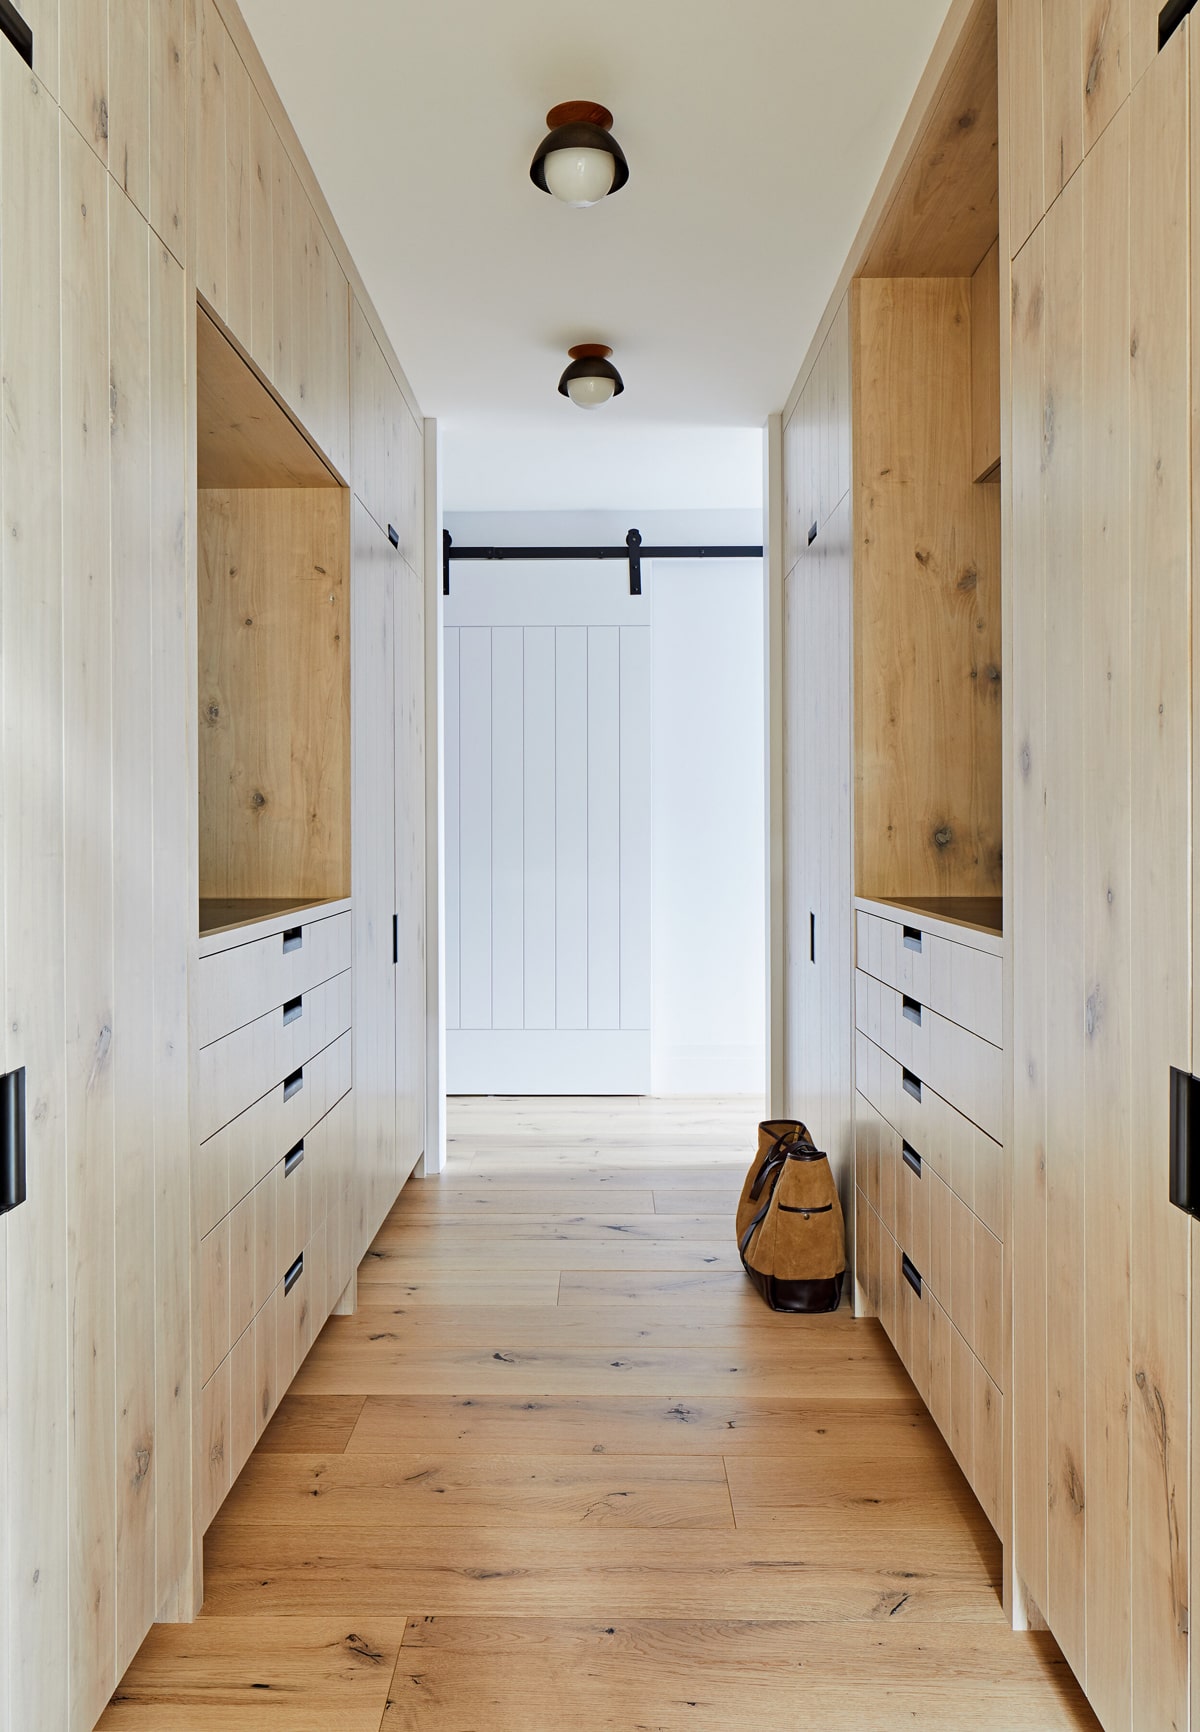 Raffinata casa rivestita di cedro con interni in legno